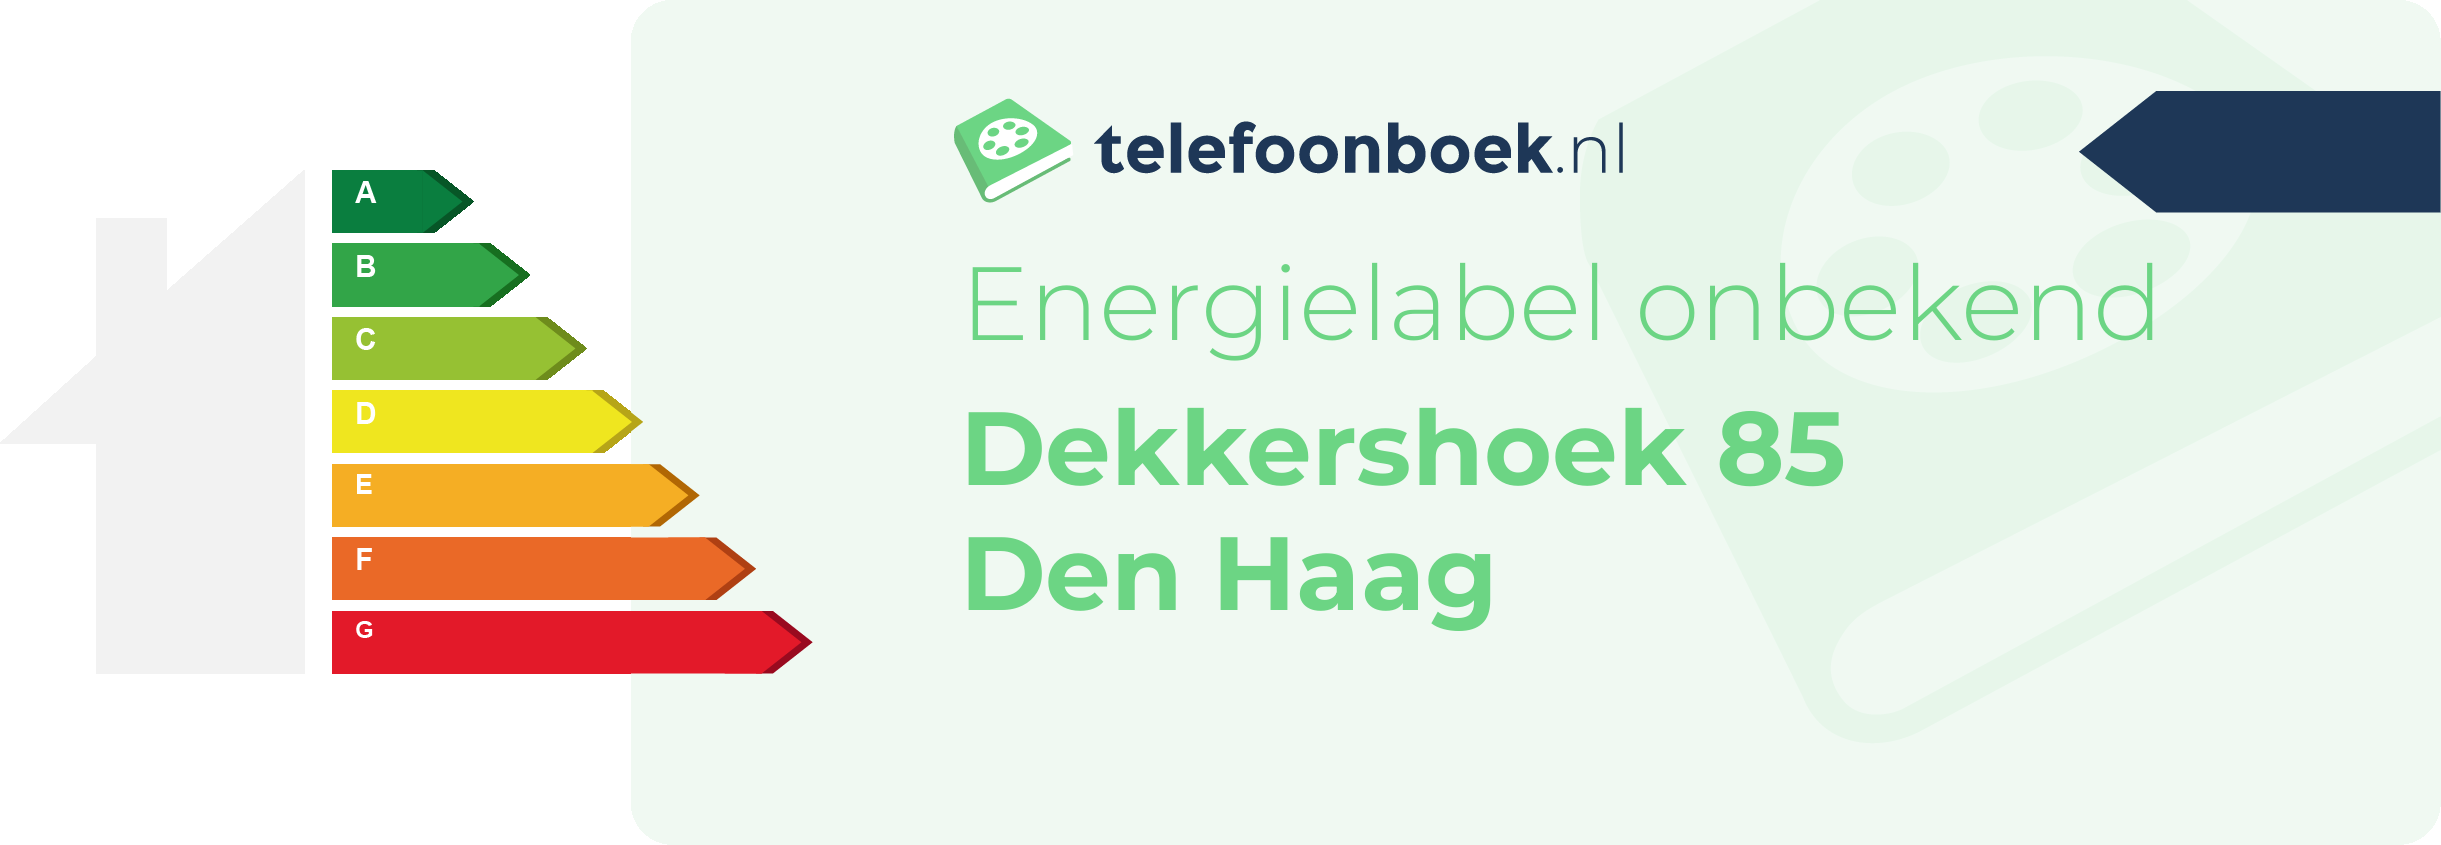 Energielabel Dekkershoek 85 Den Haag